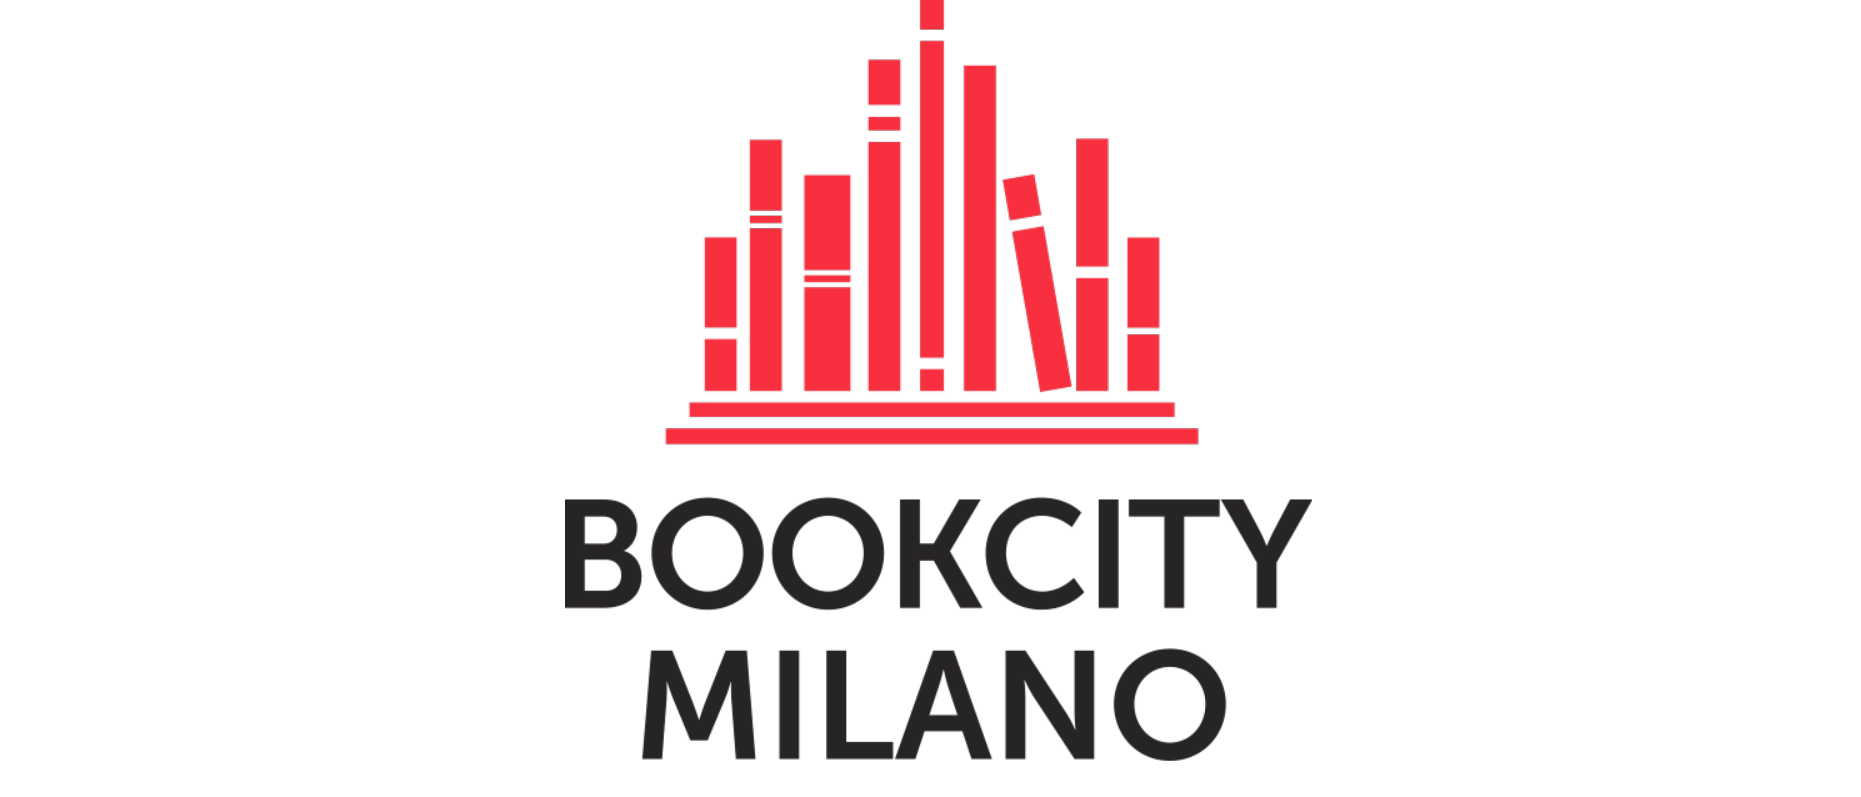 Bookcity Milano, dal 17 al 21 novembre la decima edizione